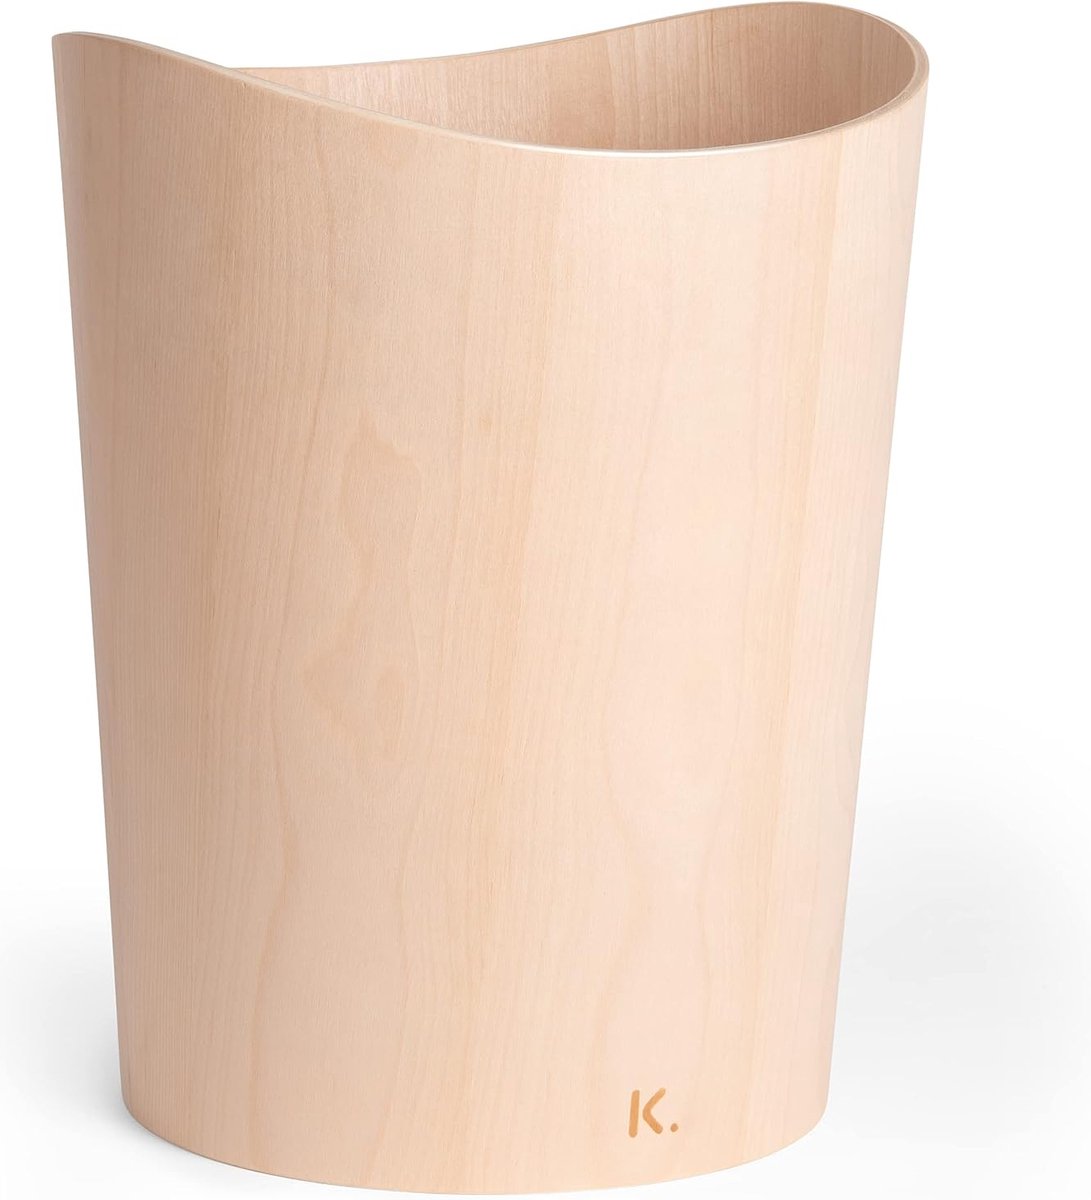 Kazai. Echt houten prullenmand Börje | Houten prullenbak voor kantoor, kinderkamer, slaapkamer en nog veel meer | 9 liter | berk